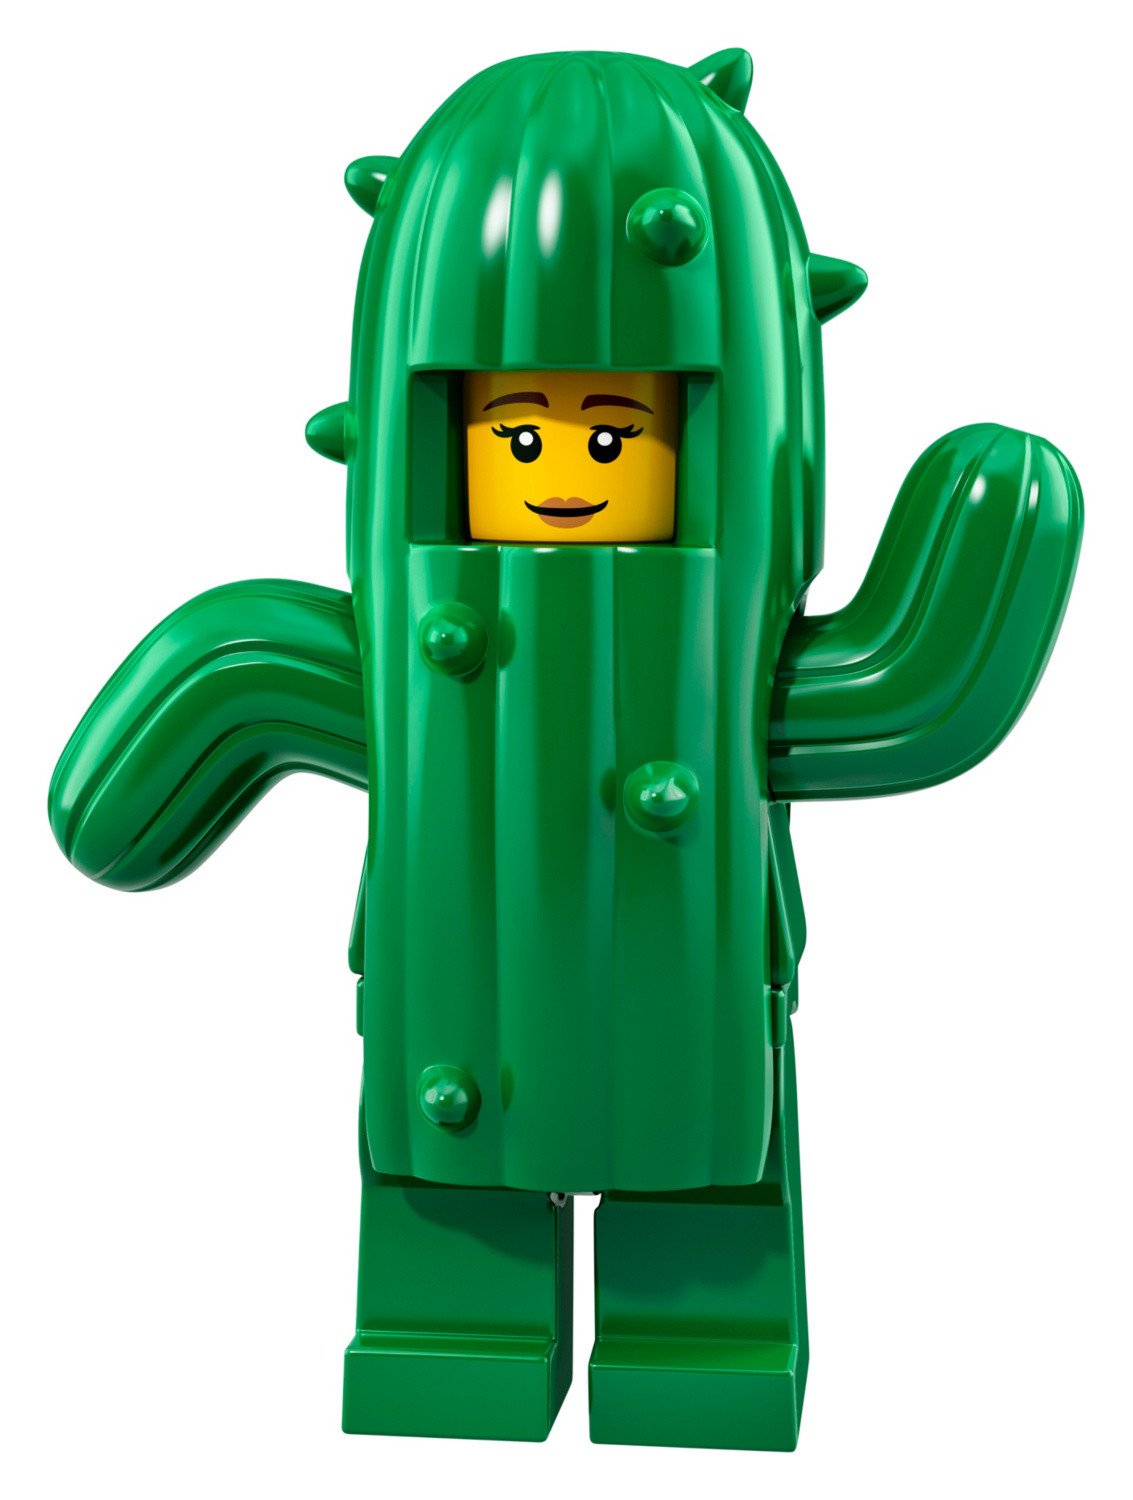 Lego 71021 Series 18, # 11 Cactus Suit Girl Minif Igure